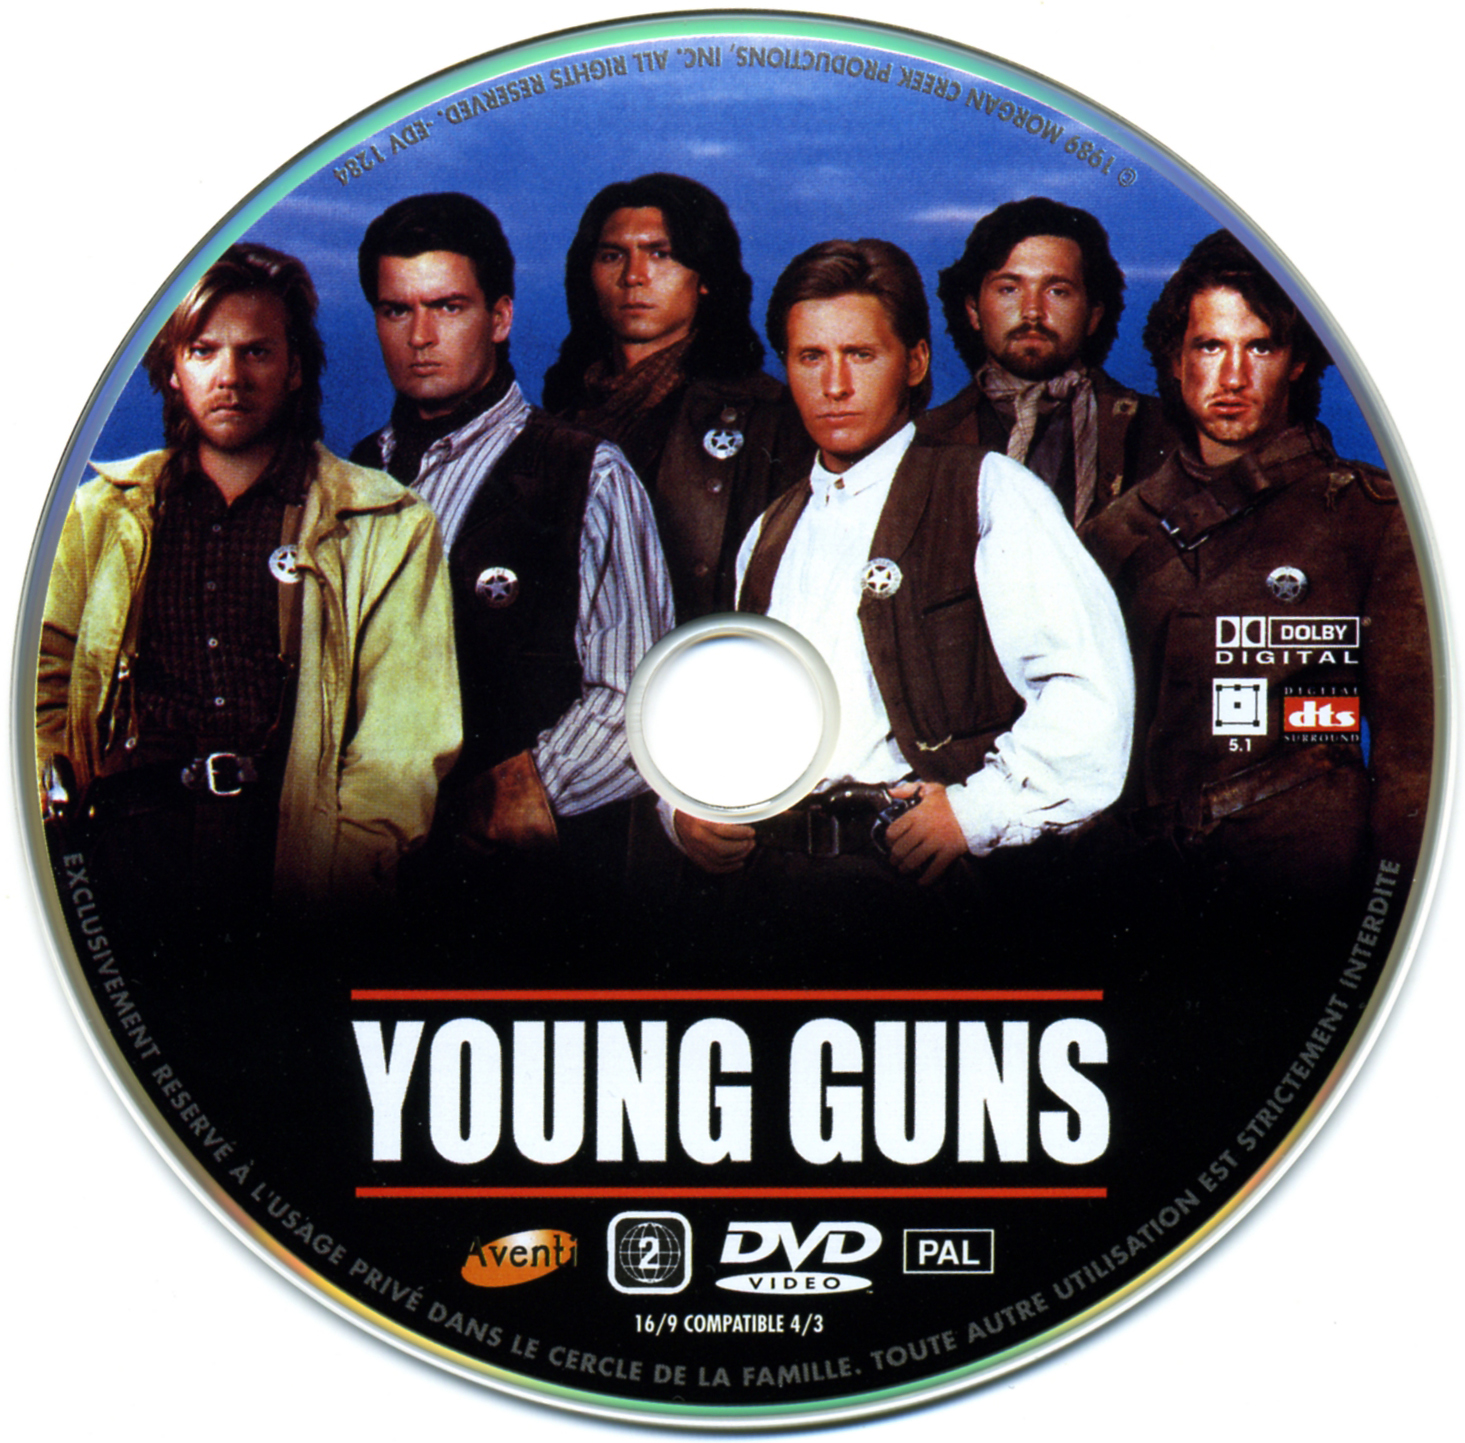 Young guns v2